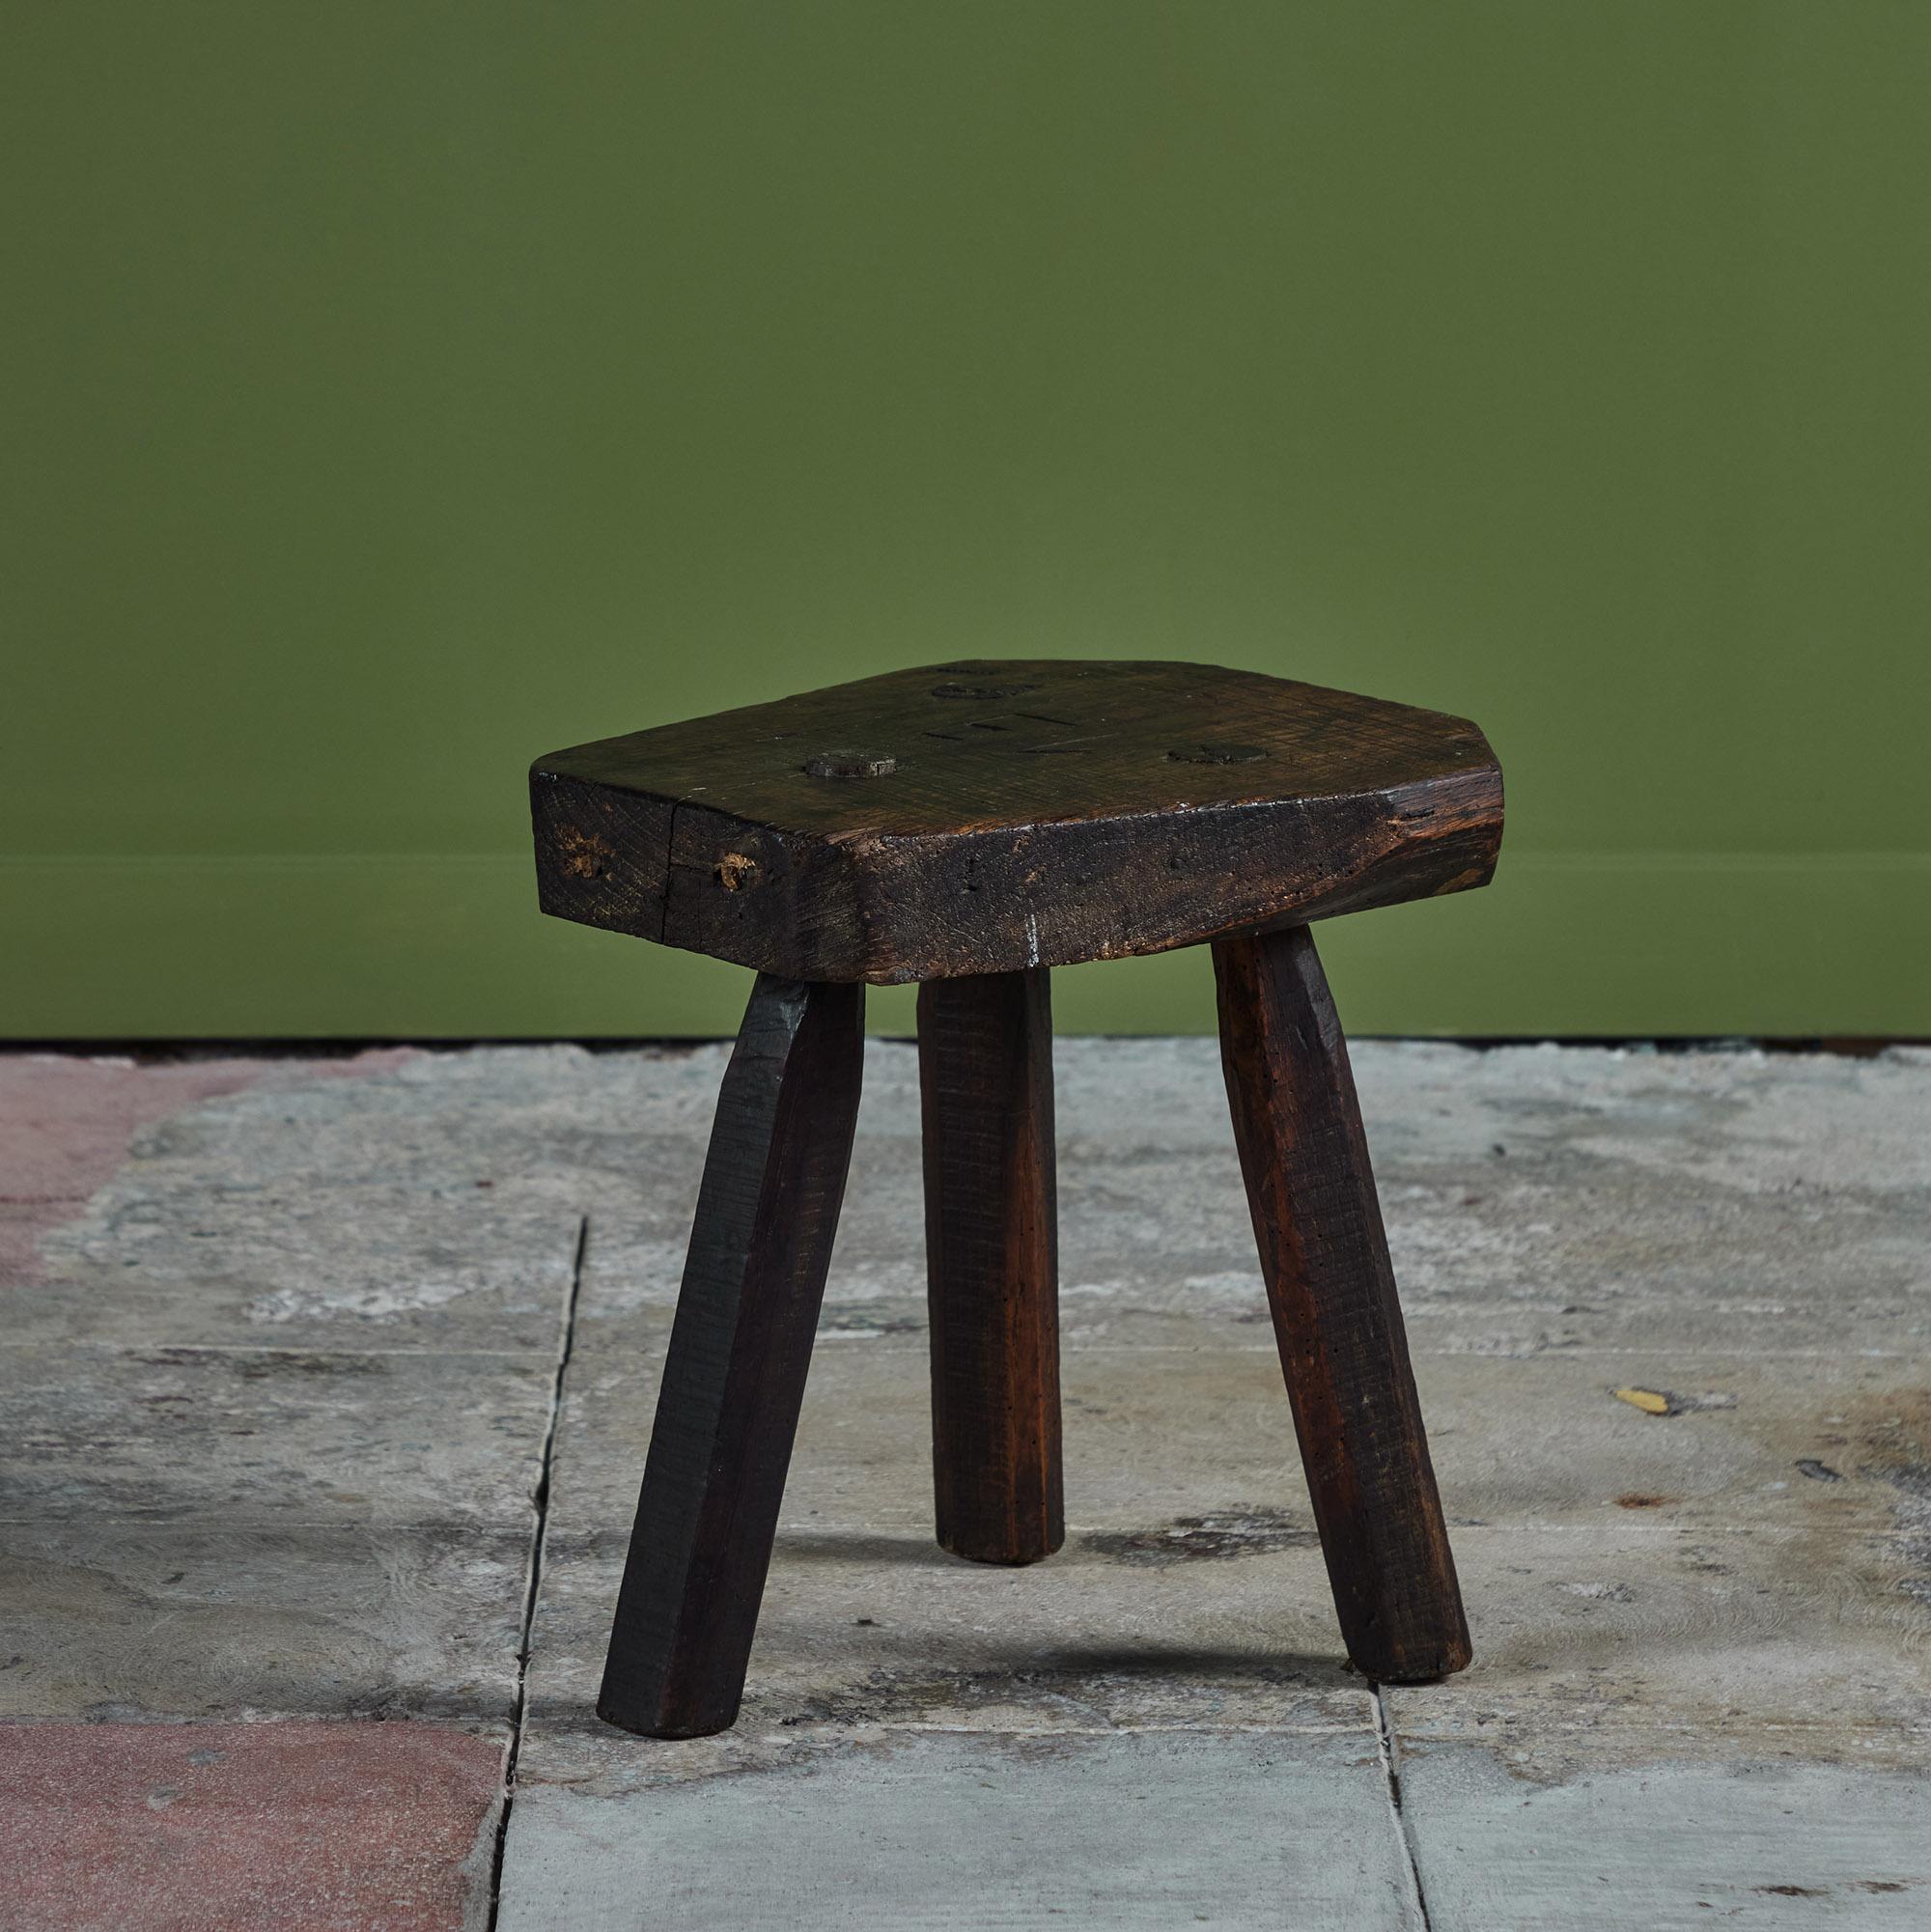 Dreibeiniger Melkschemel aus Holz aus dem späten 18. Jahrhundert. Der Hocker hat eine dicke Sitzfläche, die auf drei kastrierten Beinen ruht. Ein schöner Hocker oder Beistelltisch.
Signiert auf der Sitzfläche.

Abmessungen
13